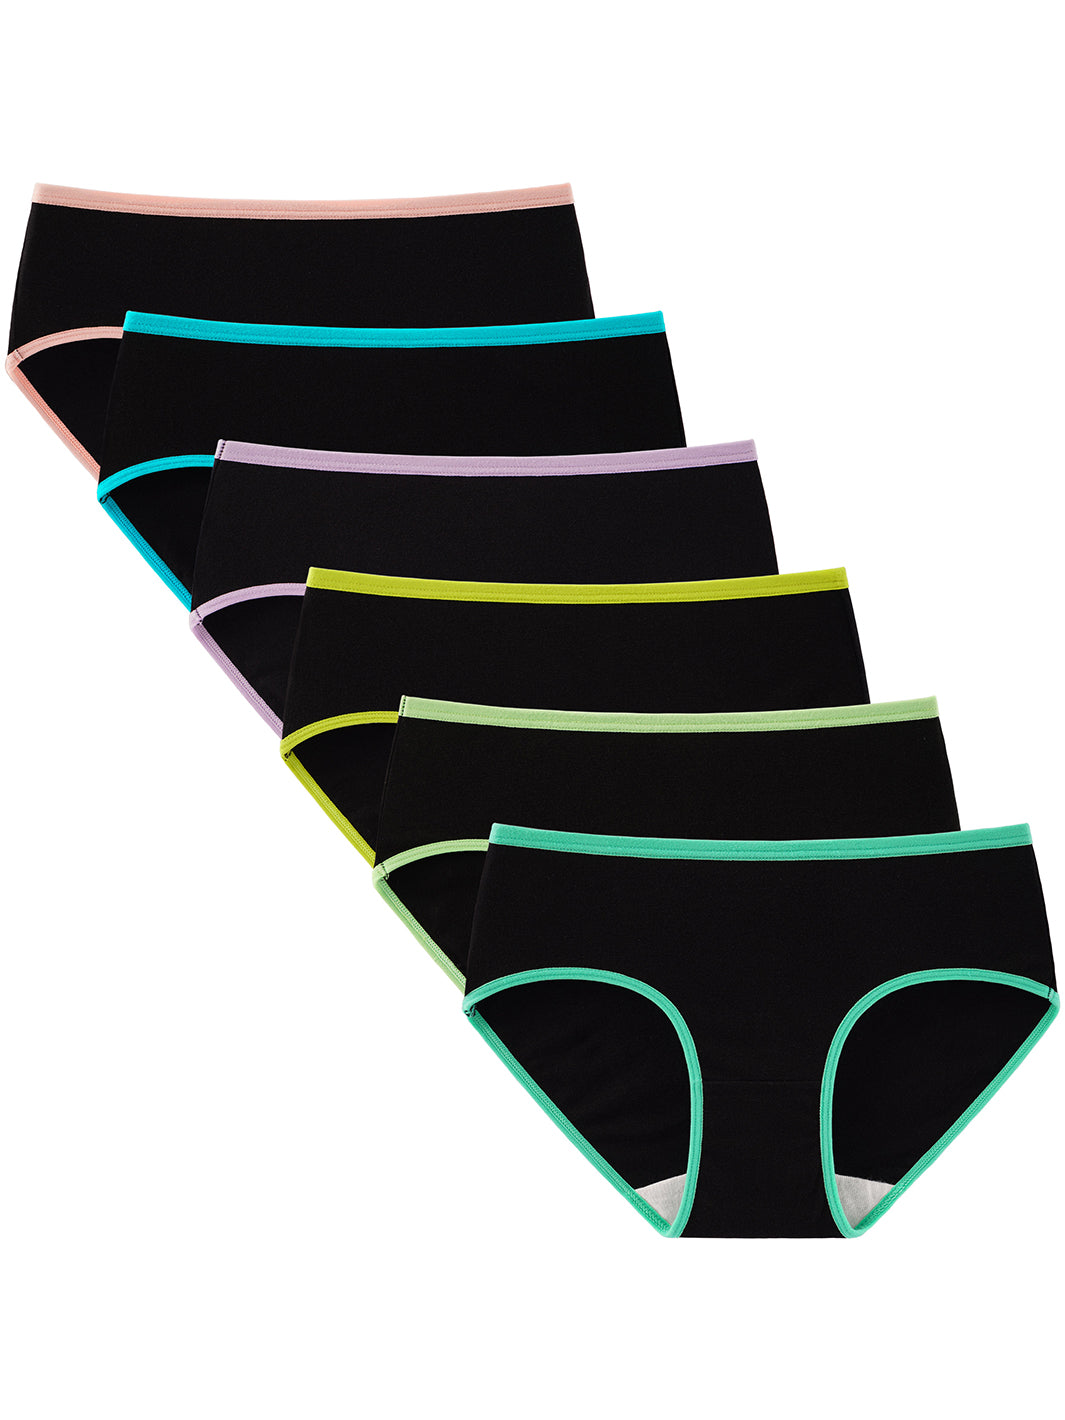 INNERSY Teen Girls'Underwear Cotton Briefs Wide Waistband Sporty Panties 6  Pack (S(8-10 yrs), Dark) 